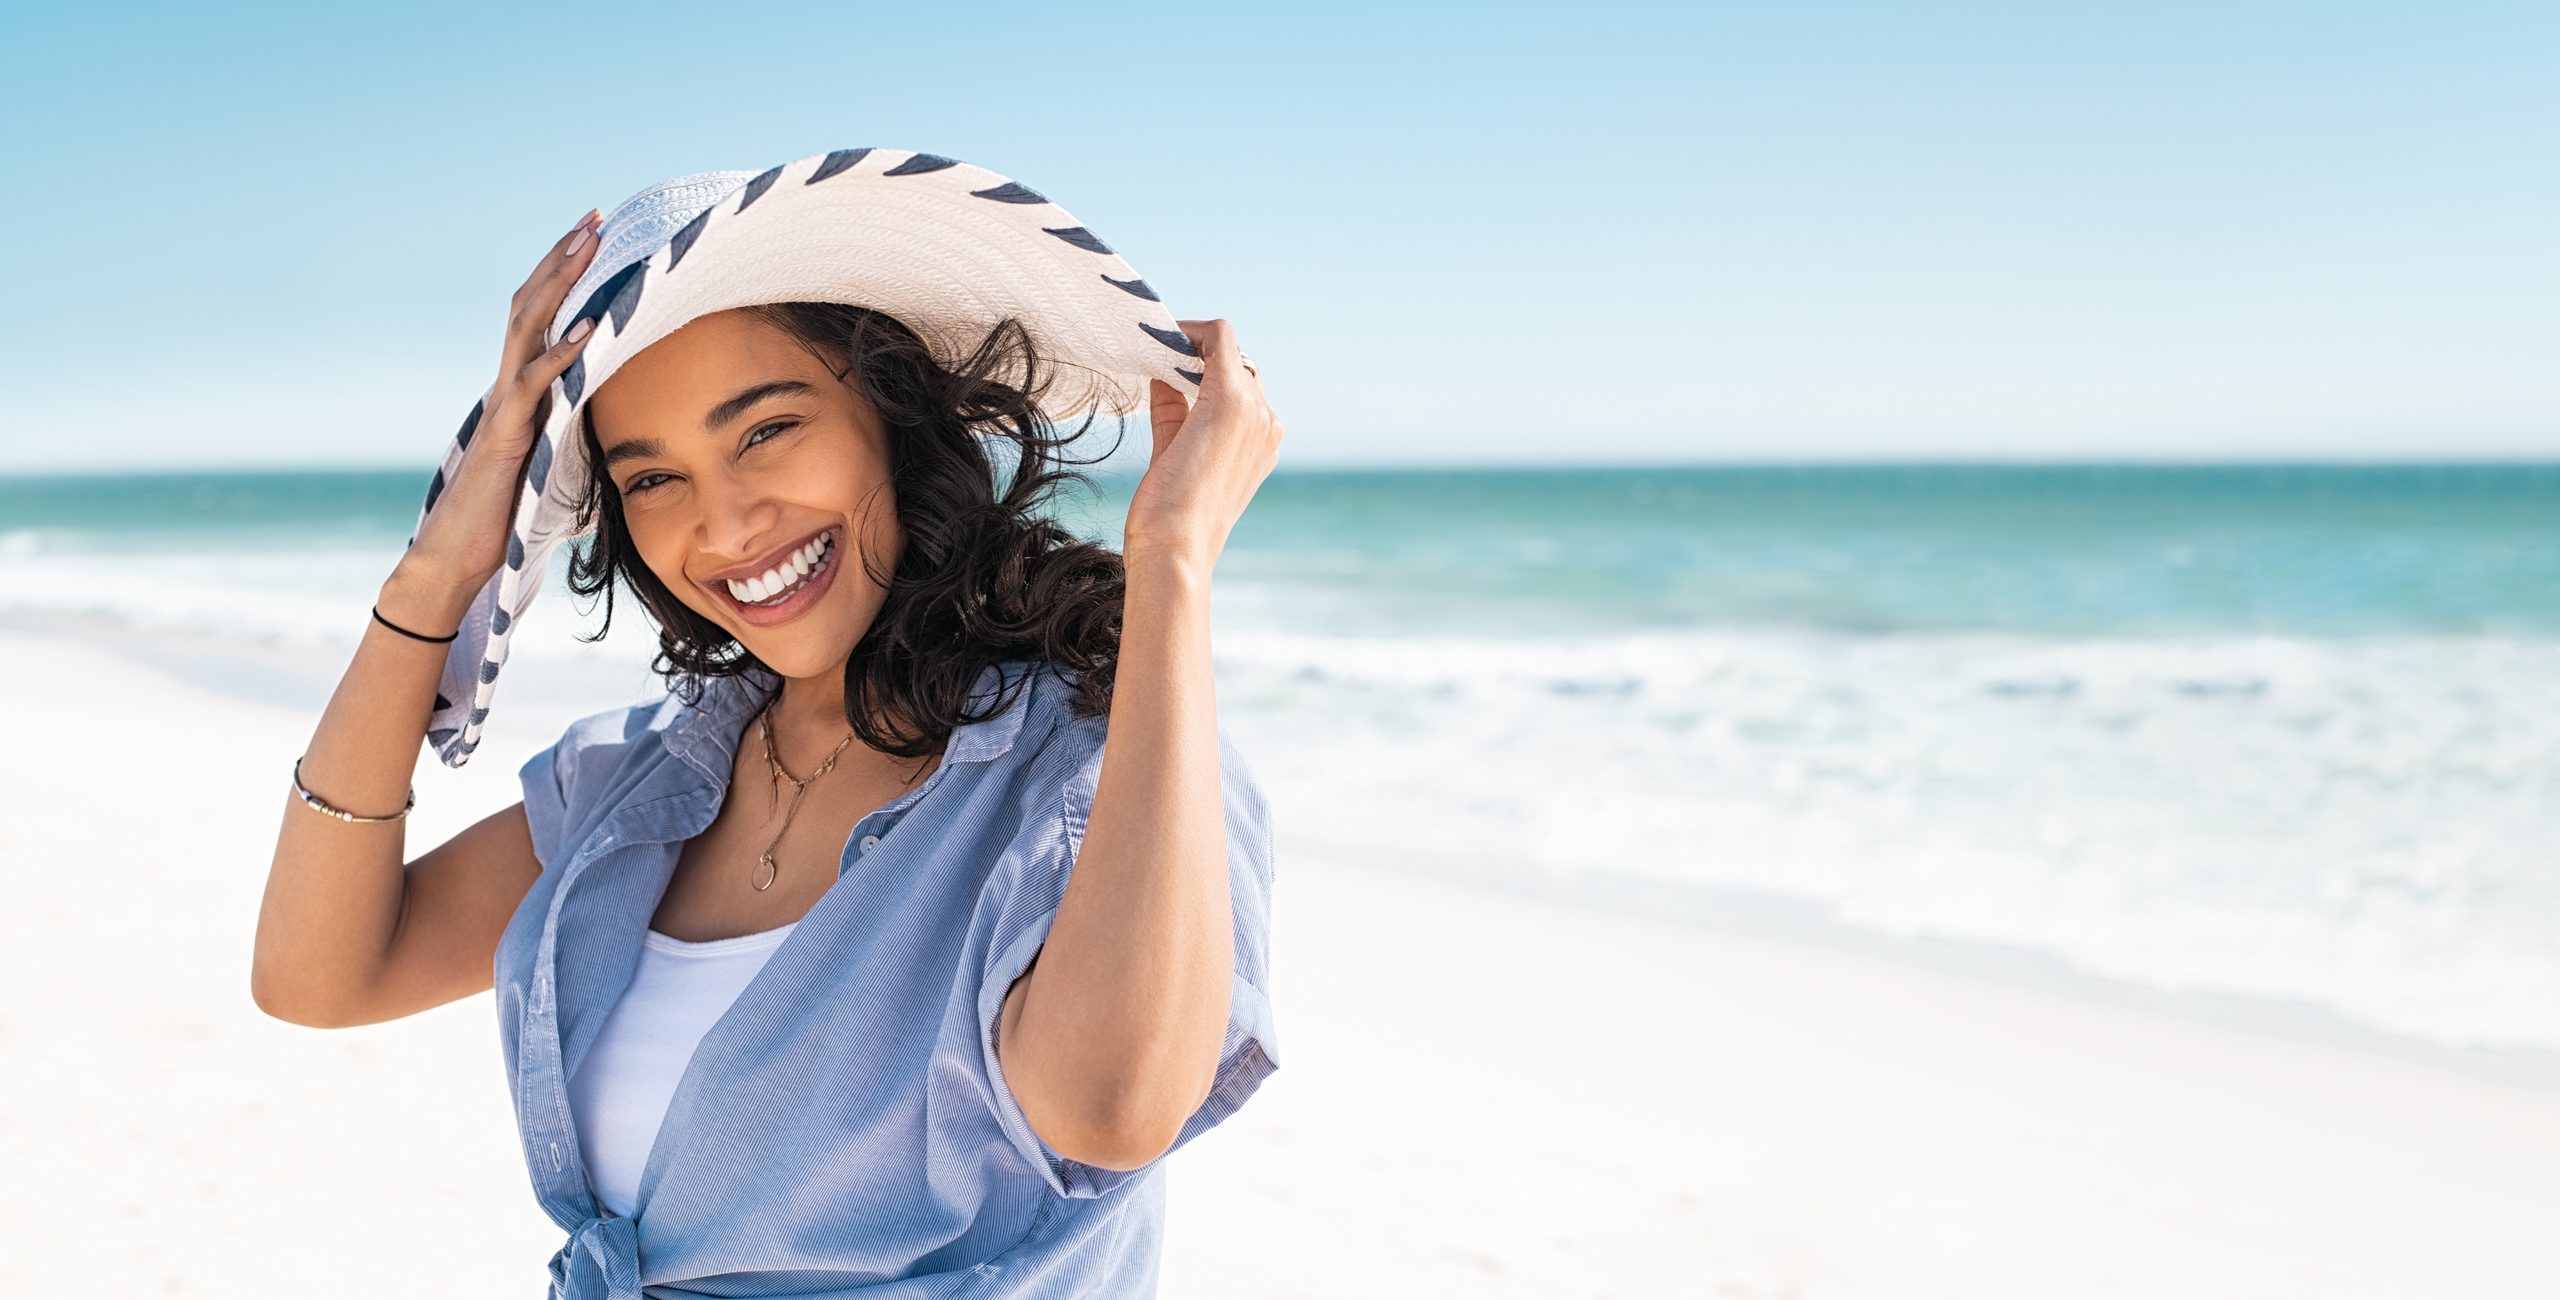 Portrait von stylischer Latinenhispanie mit weißem Strohhut am Strand. Junge Lächelnde im Urlaub genießen Meeresbrise mit Strohhut und Blick auf die Kamera. Attraktives schönes Mädchen.